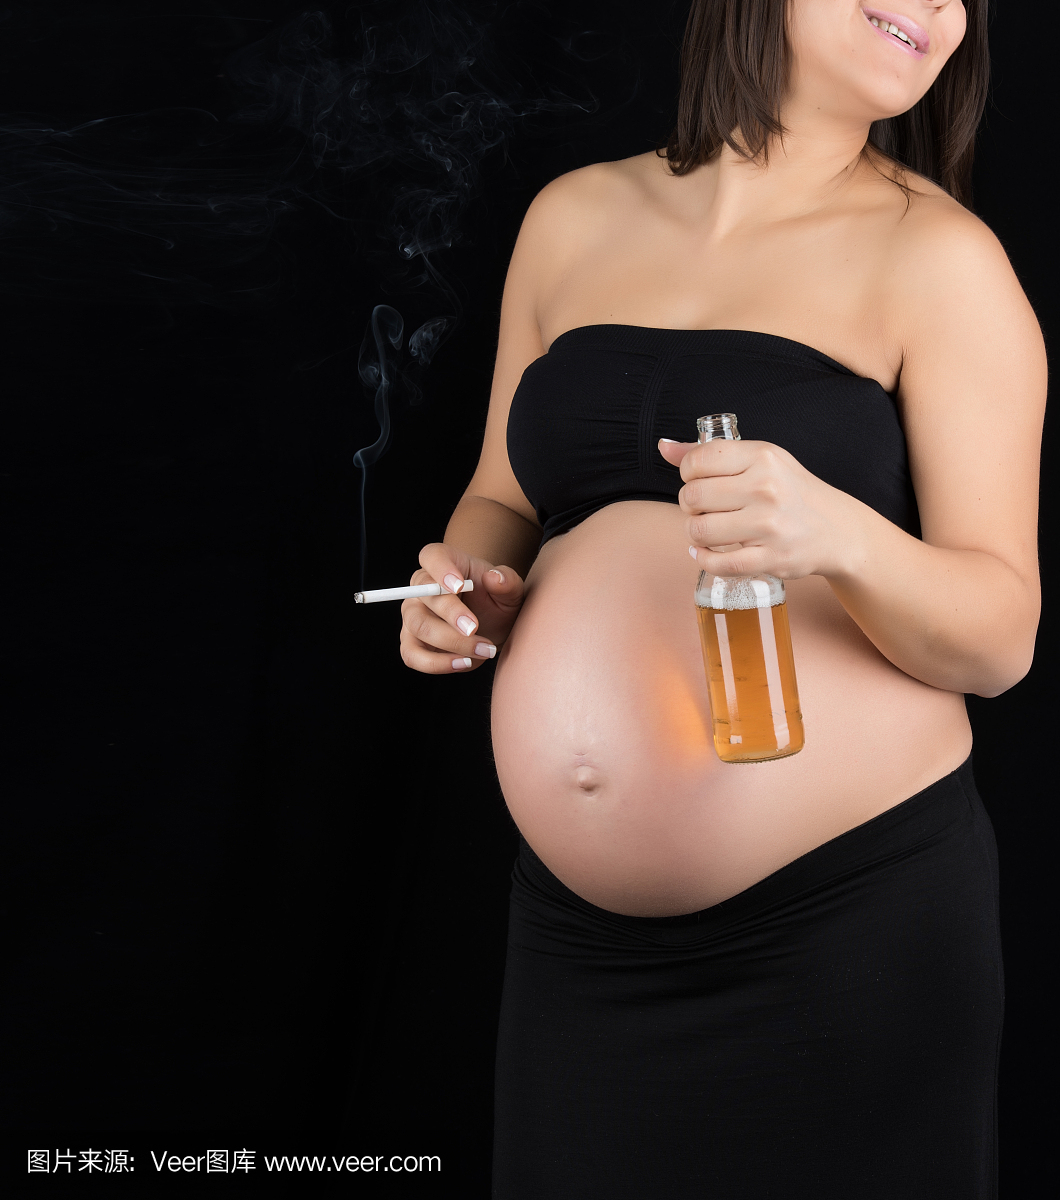 怀孕母亲不良和不小心吸烟和不安全饮酒b